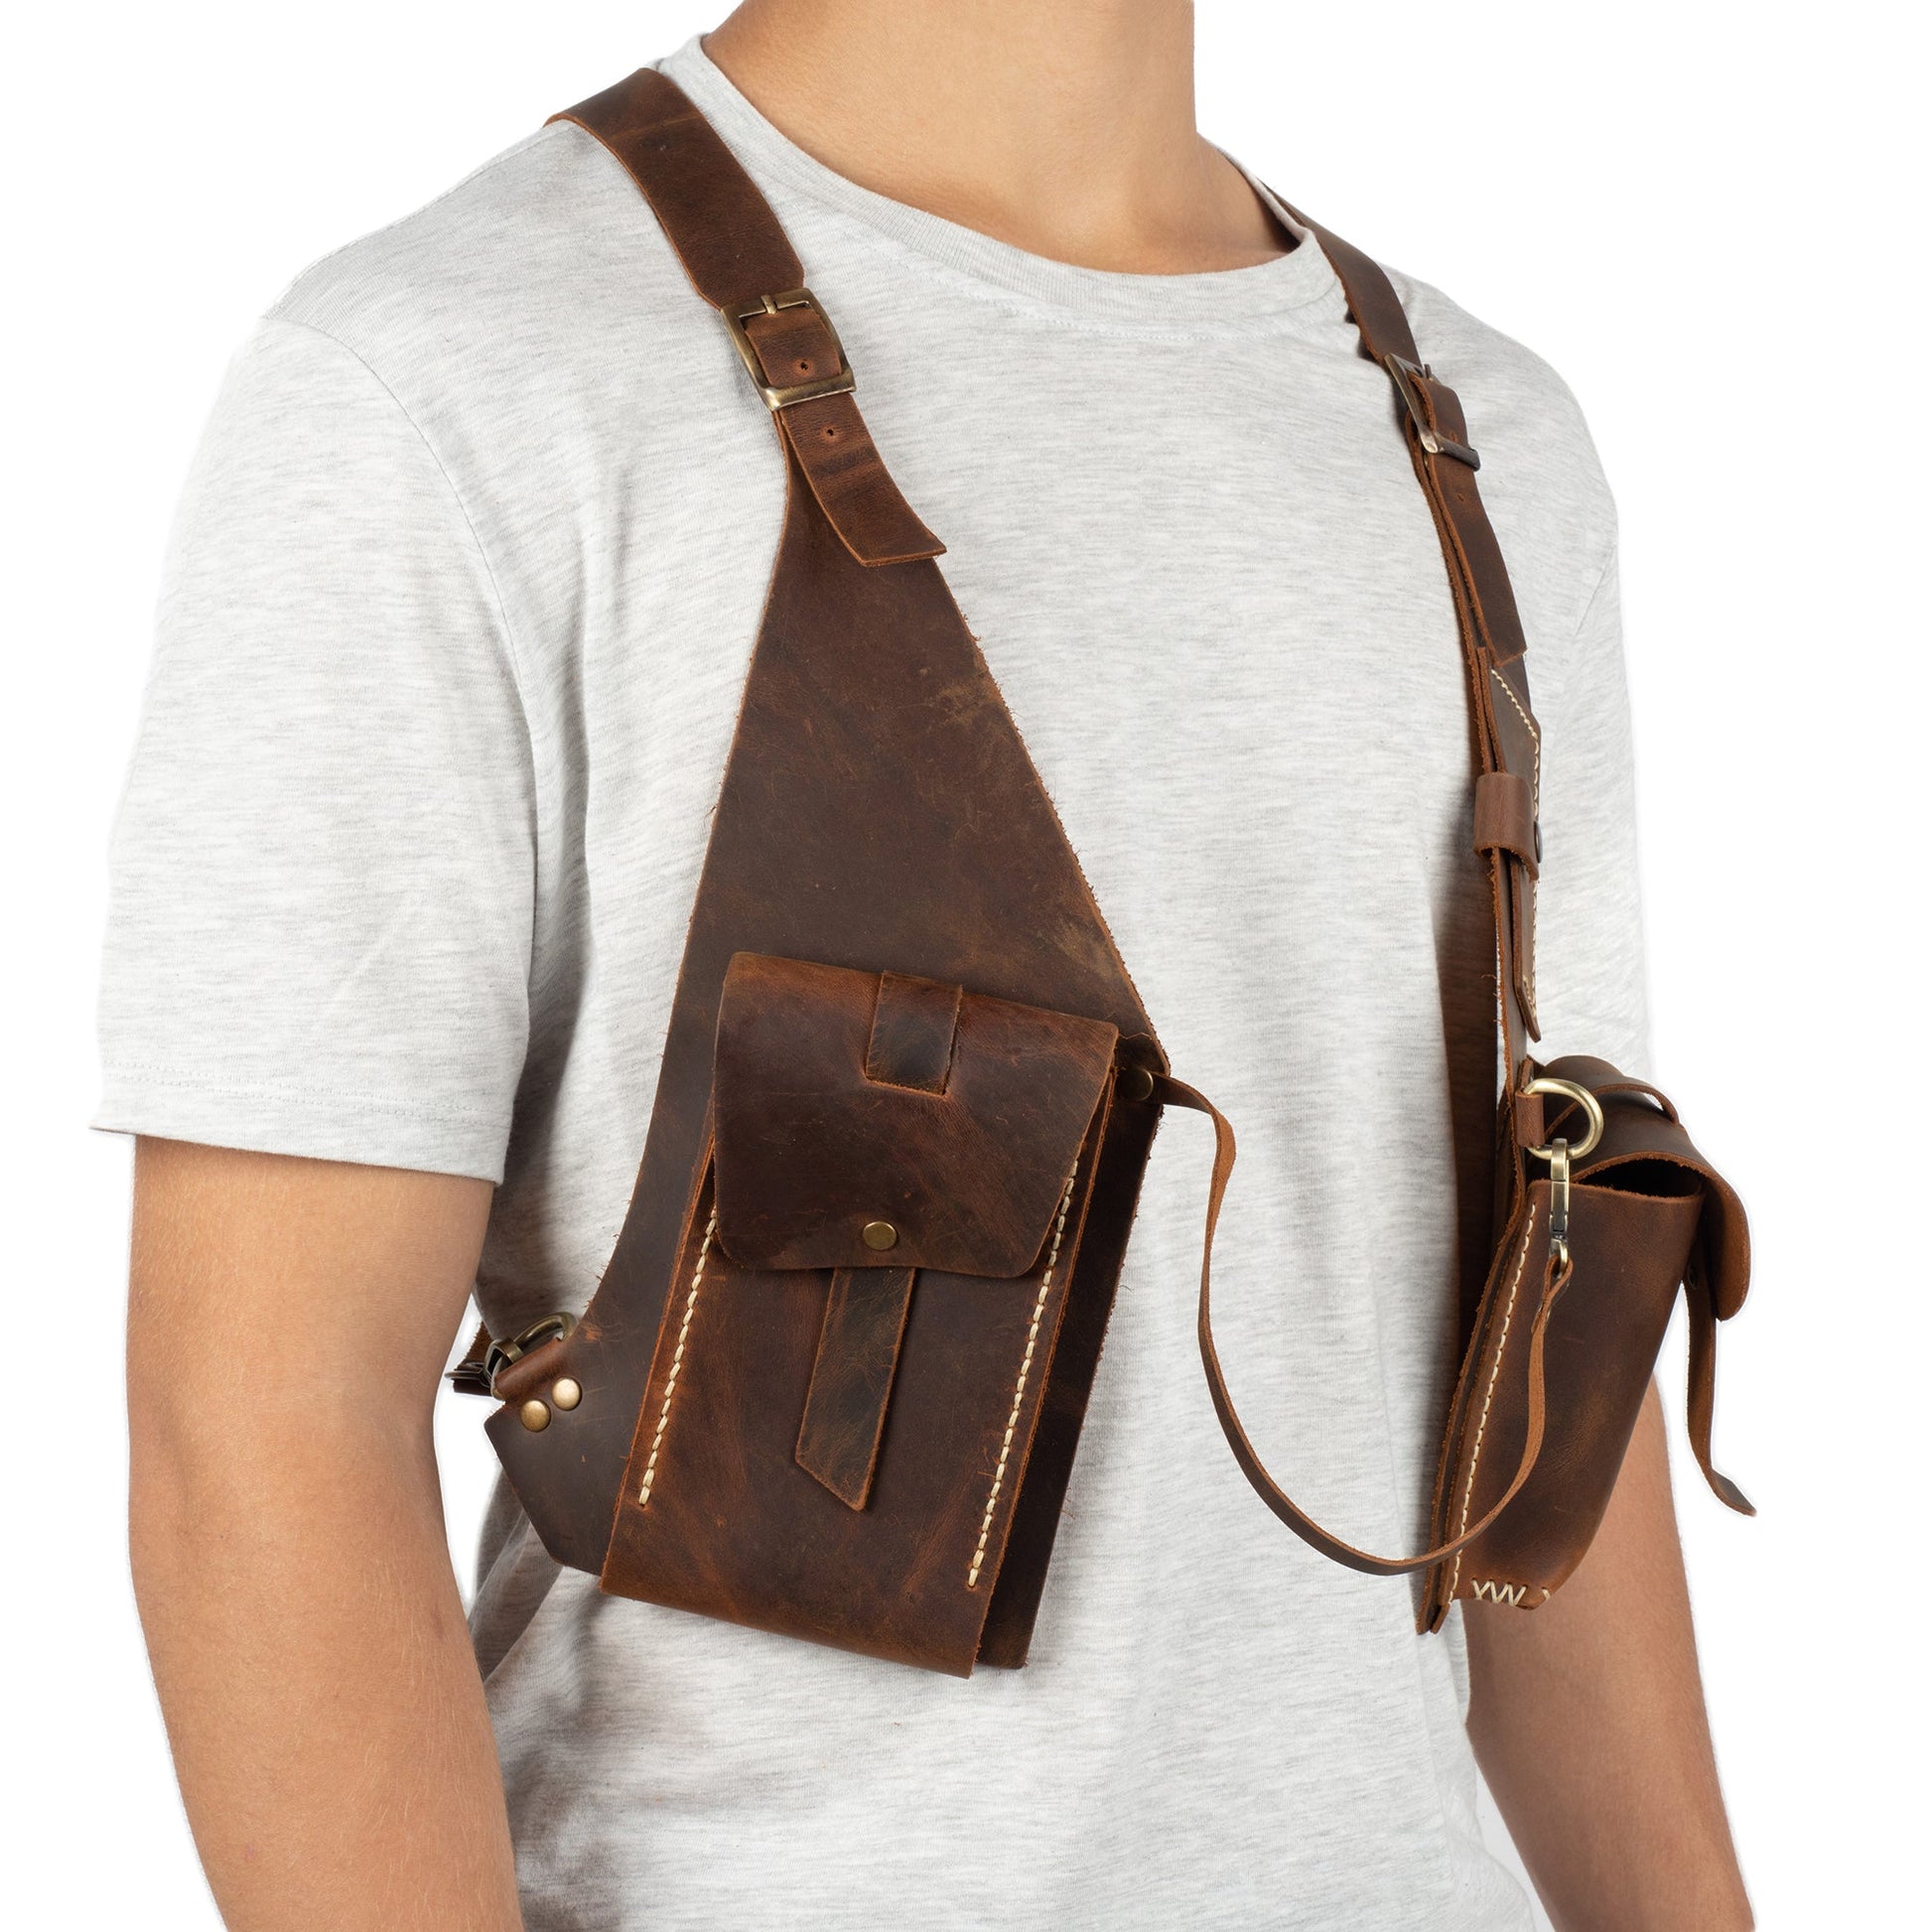 Regulus Brown Shoulder Leather Holster With Pocket - Zengoda Shop online from Artisan Brands